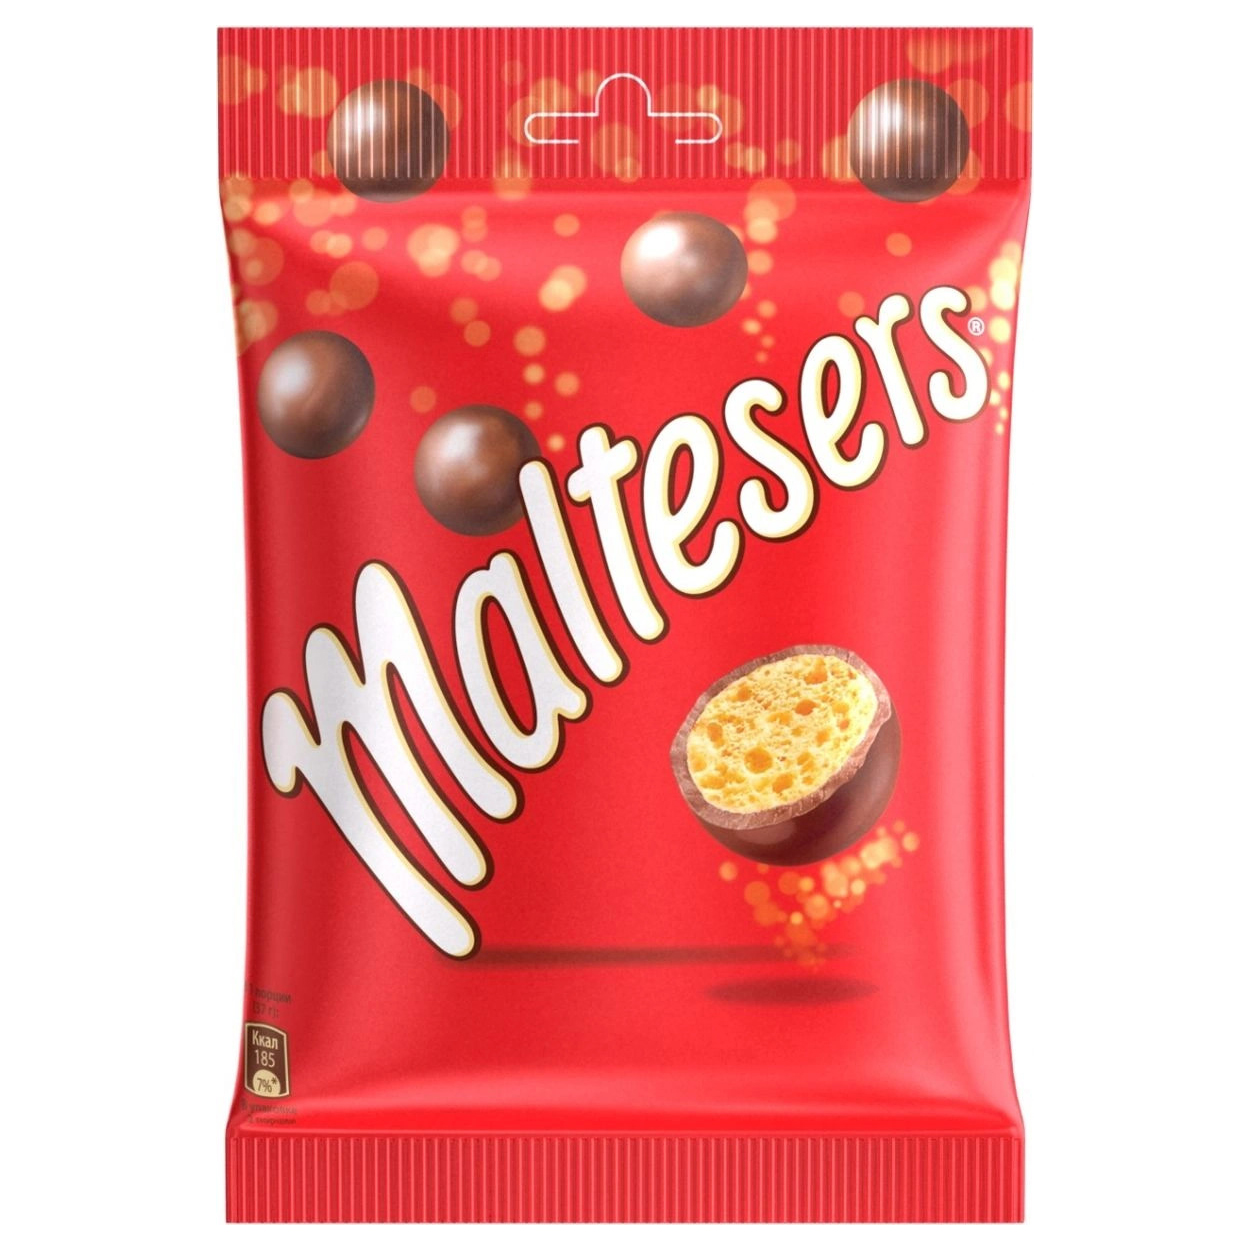 Конфеты шоколадные шарики Мальтизерс. Конфеты Maltesers шоколадные шарики. Шоколадное драже Мальтизерс. Конфеты драже Maltesers. Конфеты maltesers купить